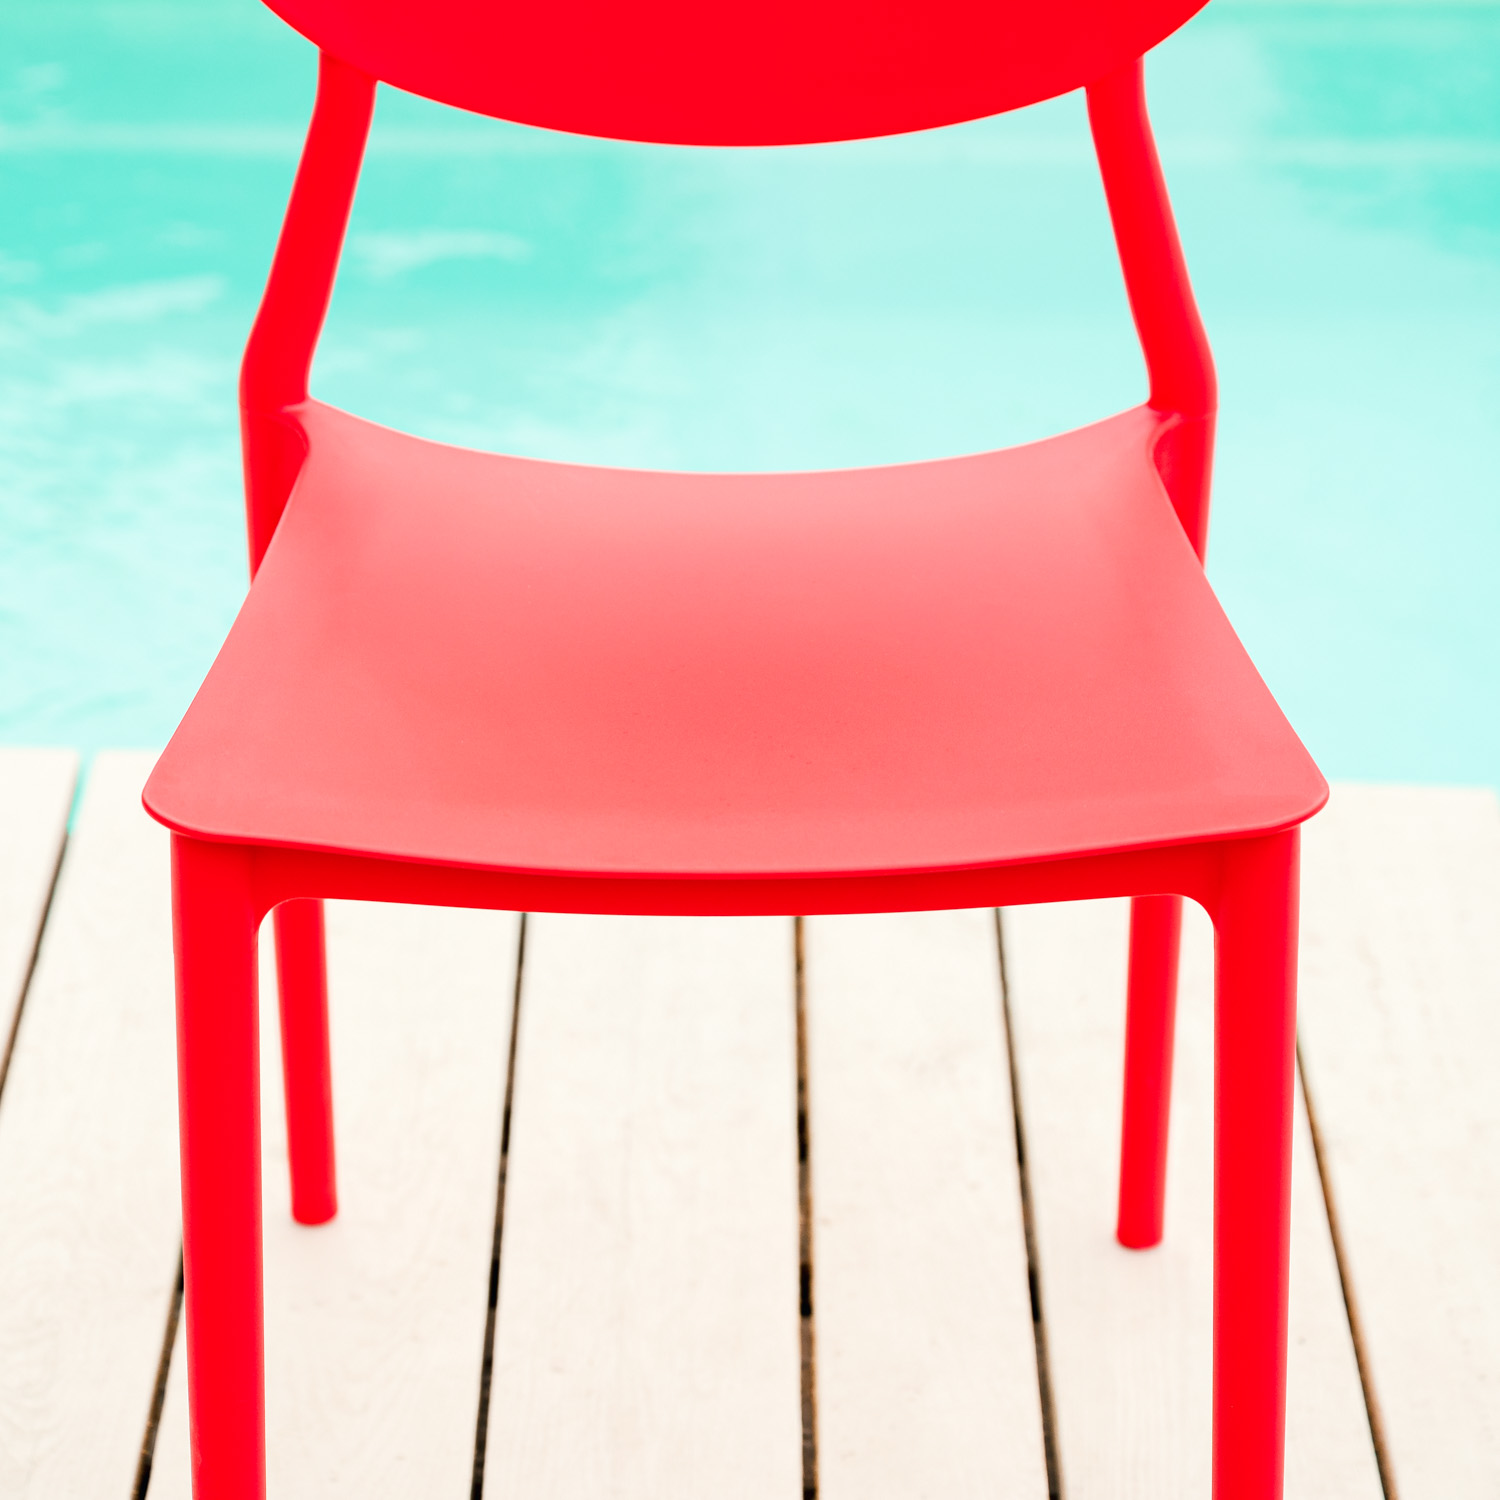 Chaise de jardin Lot de 4 Rouge Chaises design moderne Plastique Chaises exterieur Chaises empilable Chaise de cuisine